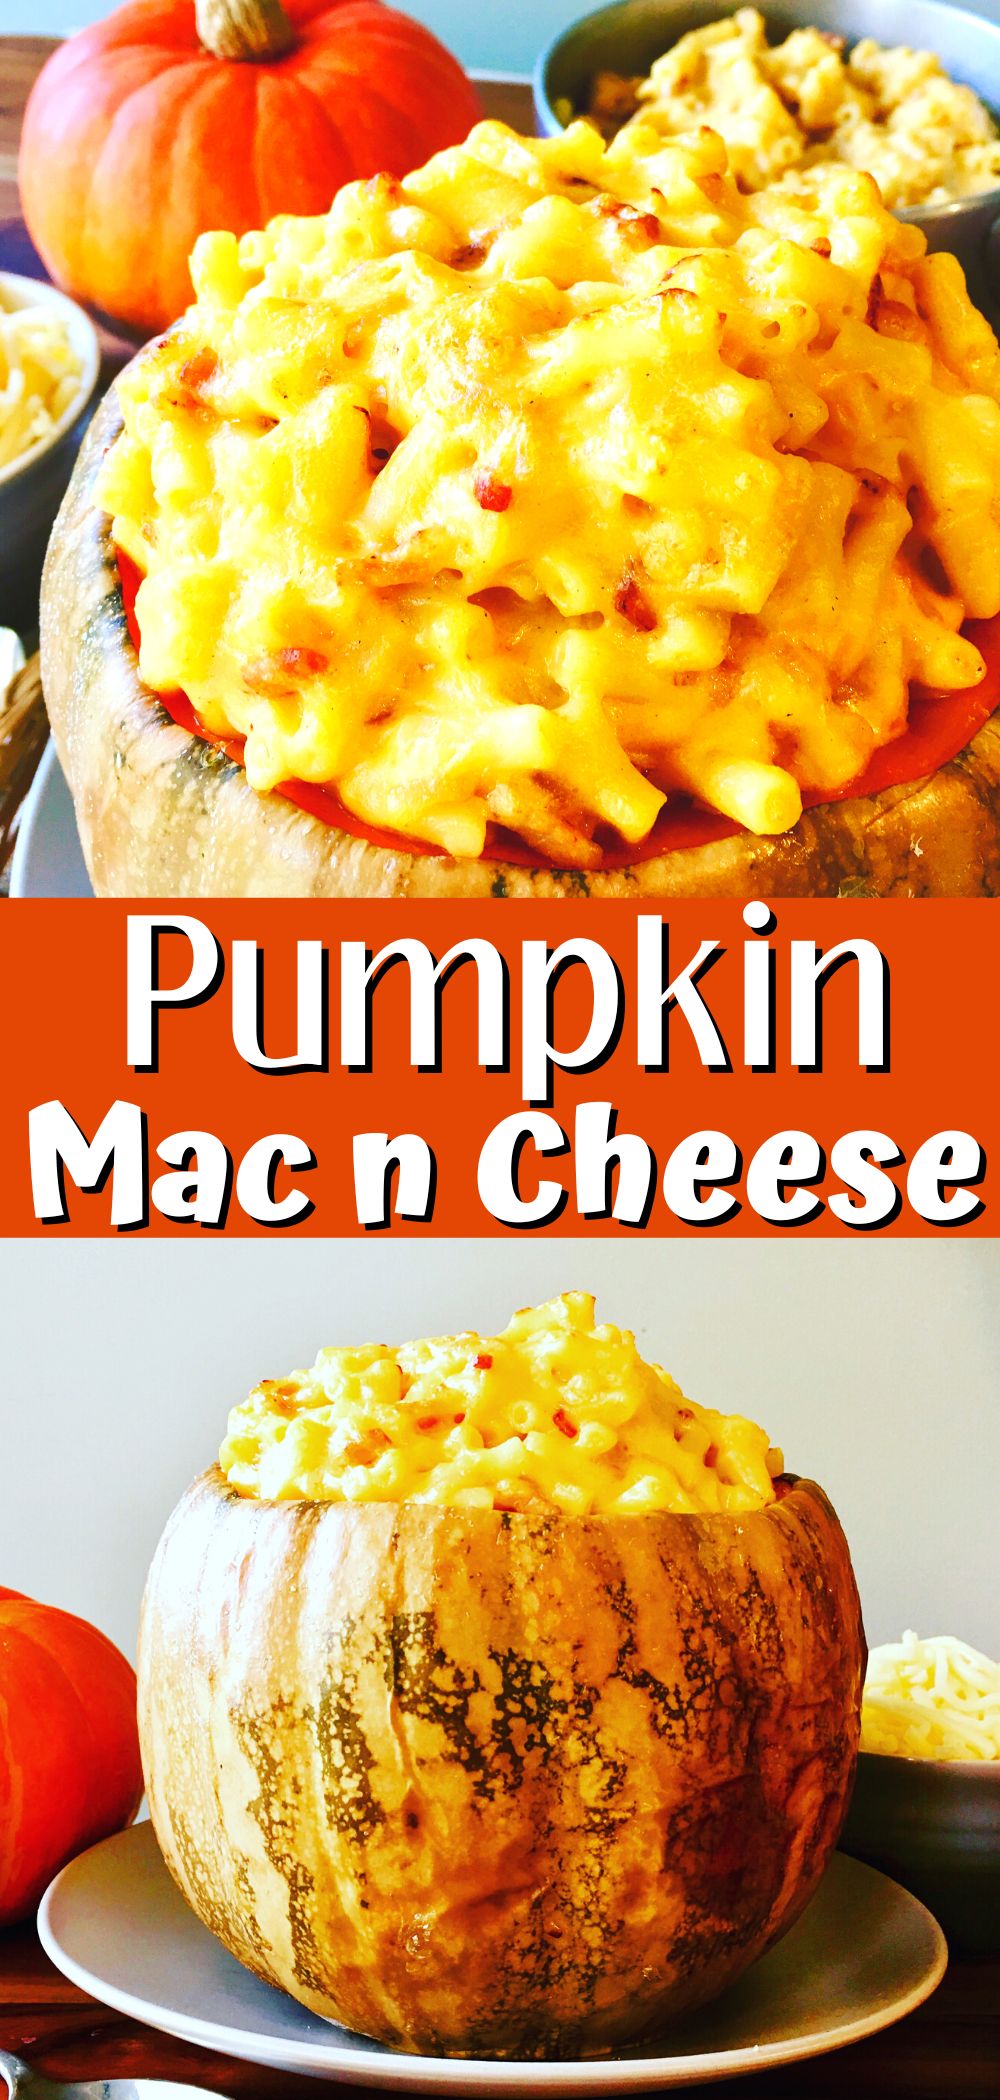 pumpkin mac and cheese pin in a pumpkin